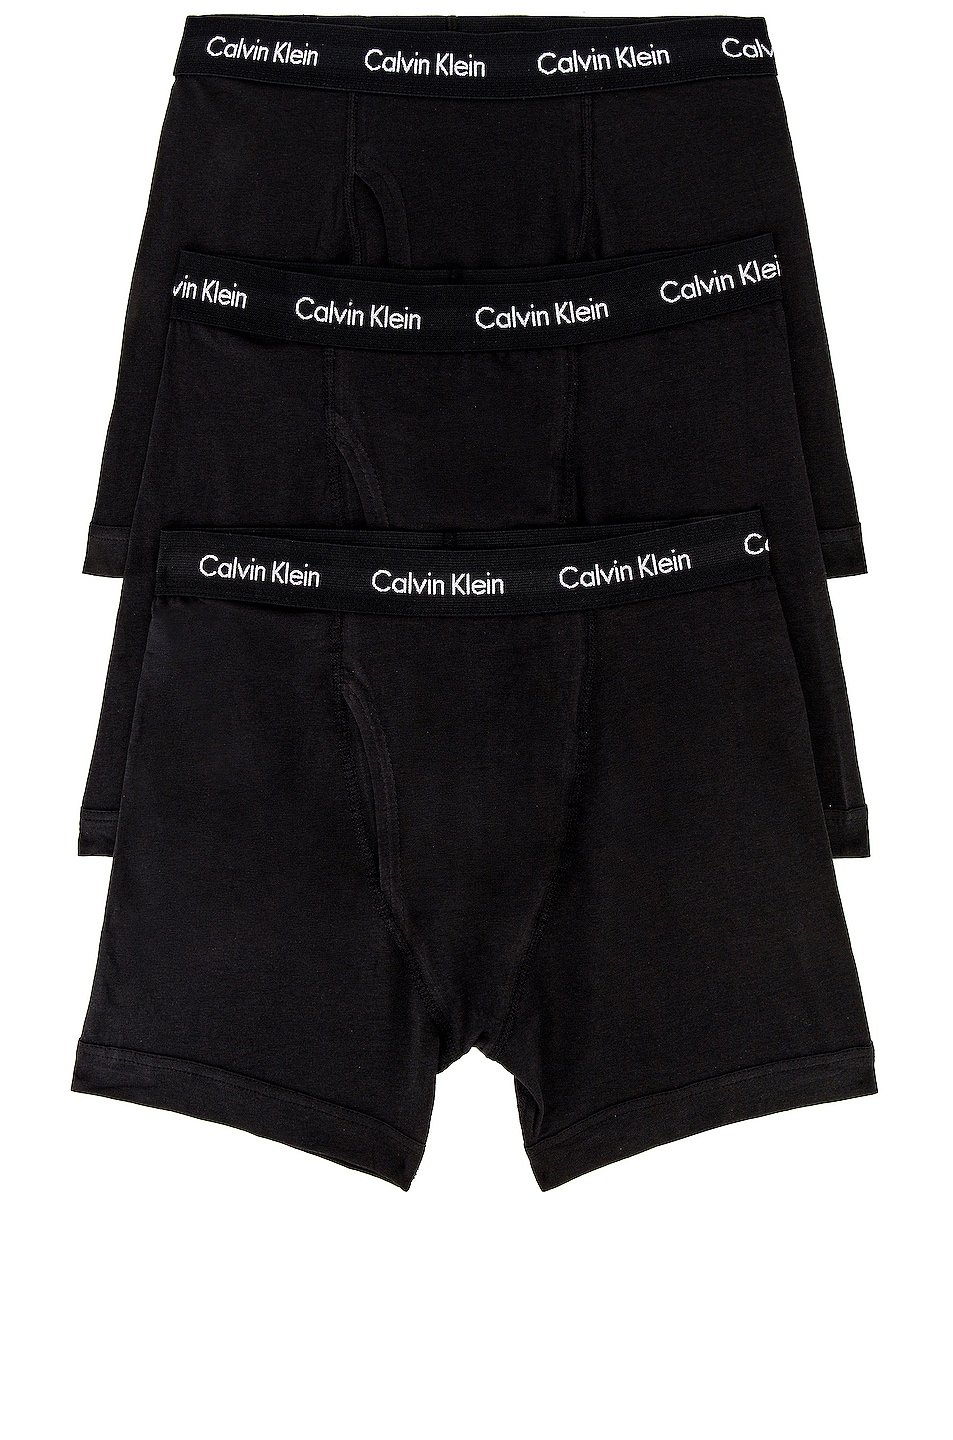 Calvin Klein Underwear Calvin Klein Boxer Brief 3 Piece Set in Black | FWRD